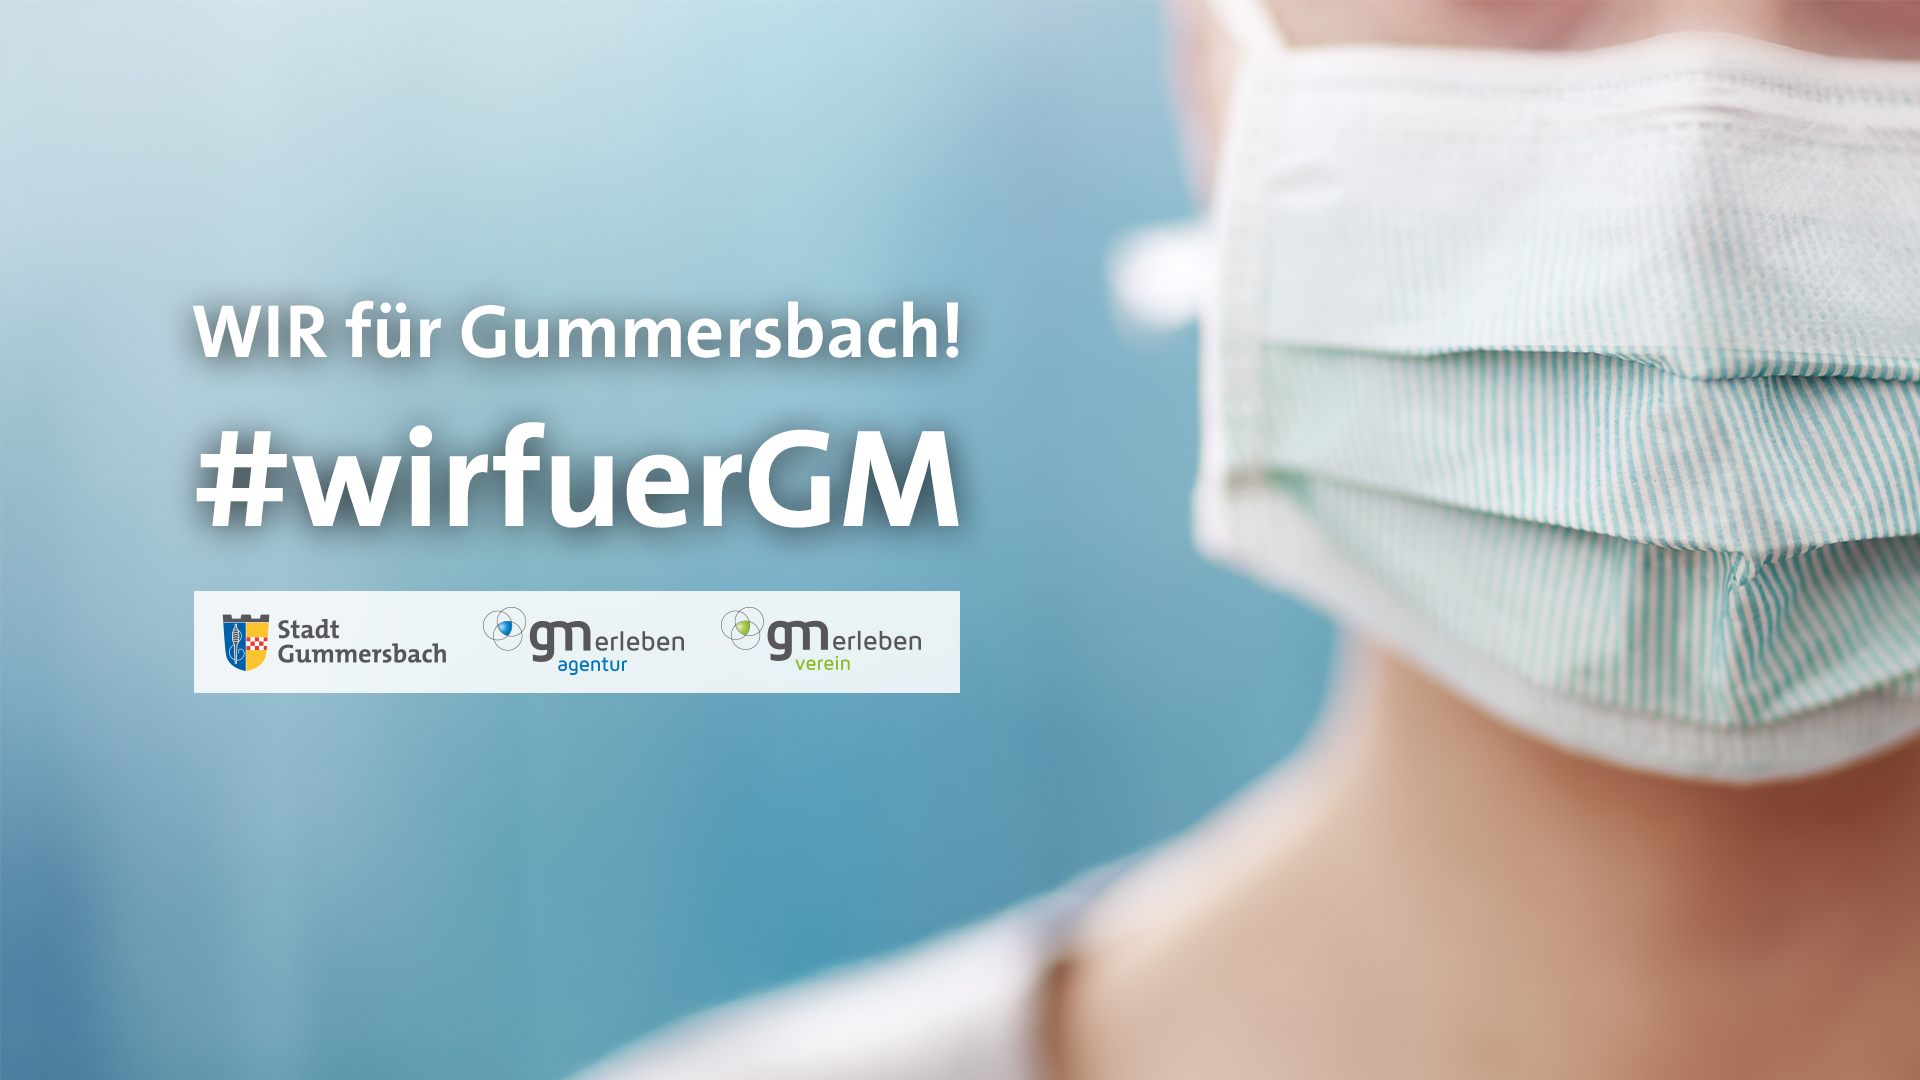 WIR für Gummersbach! #wirfuerGM